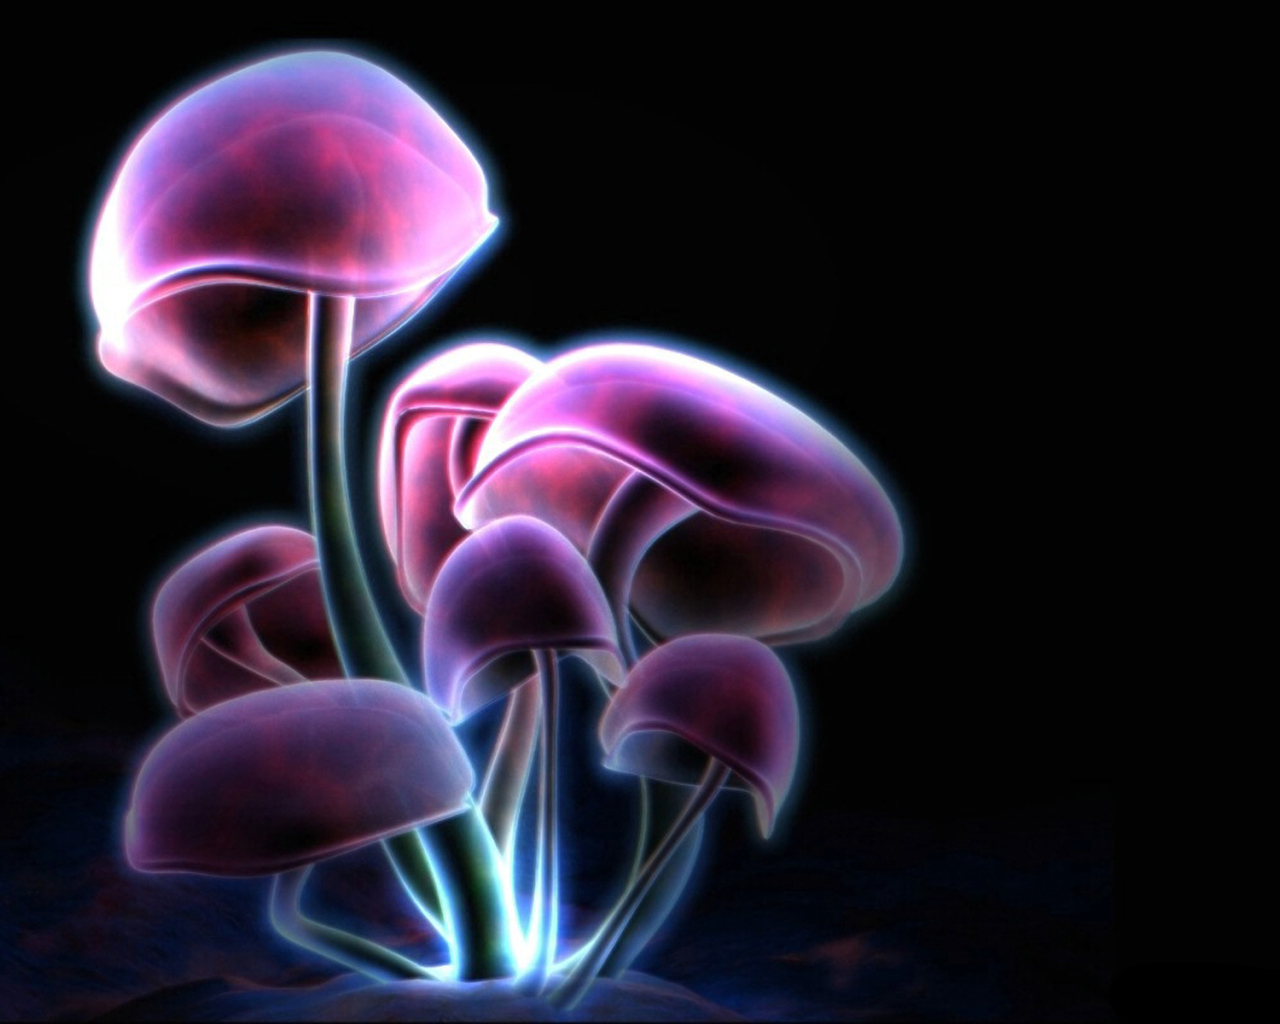 Фиолетовые грибы